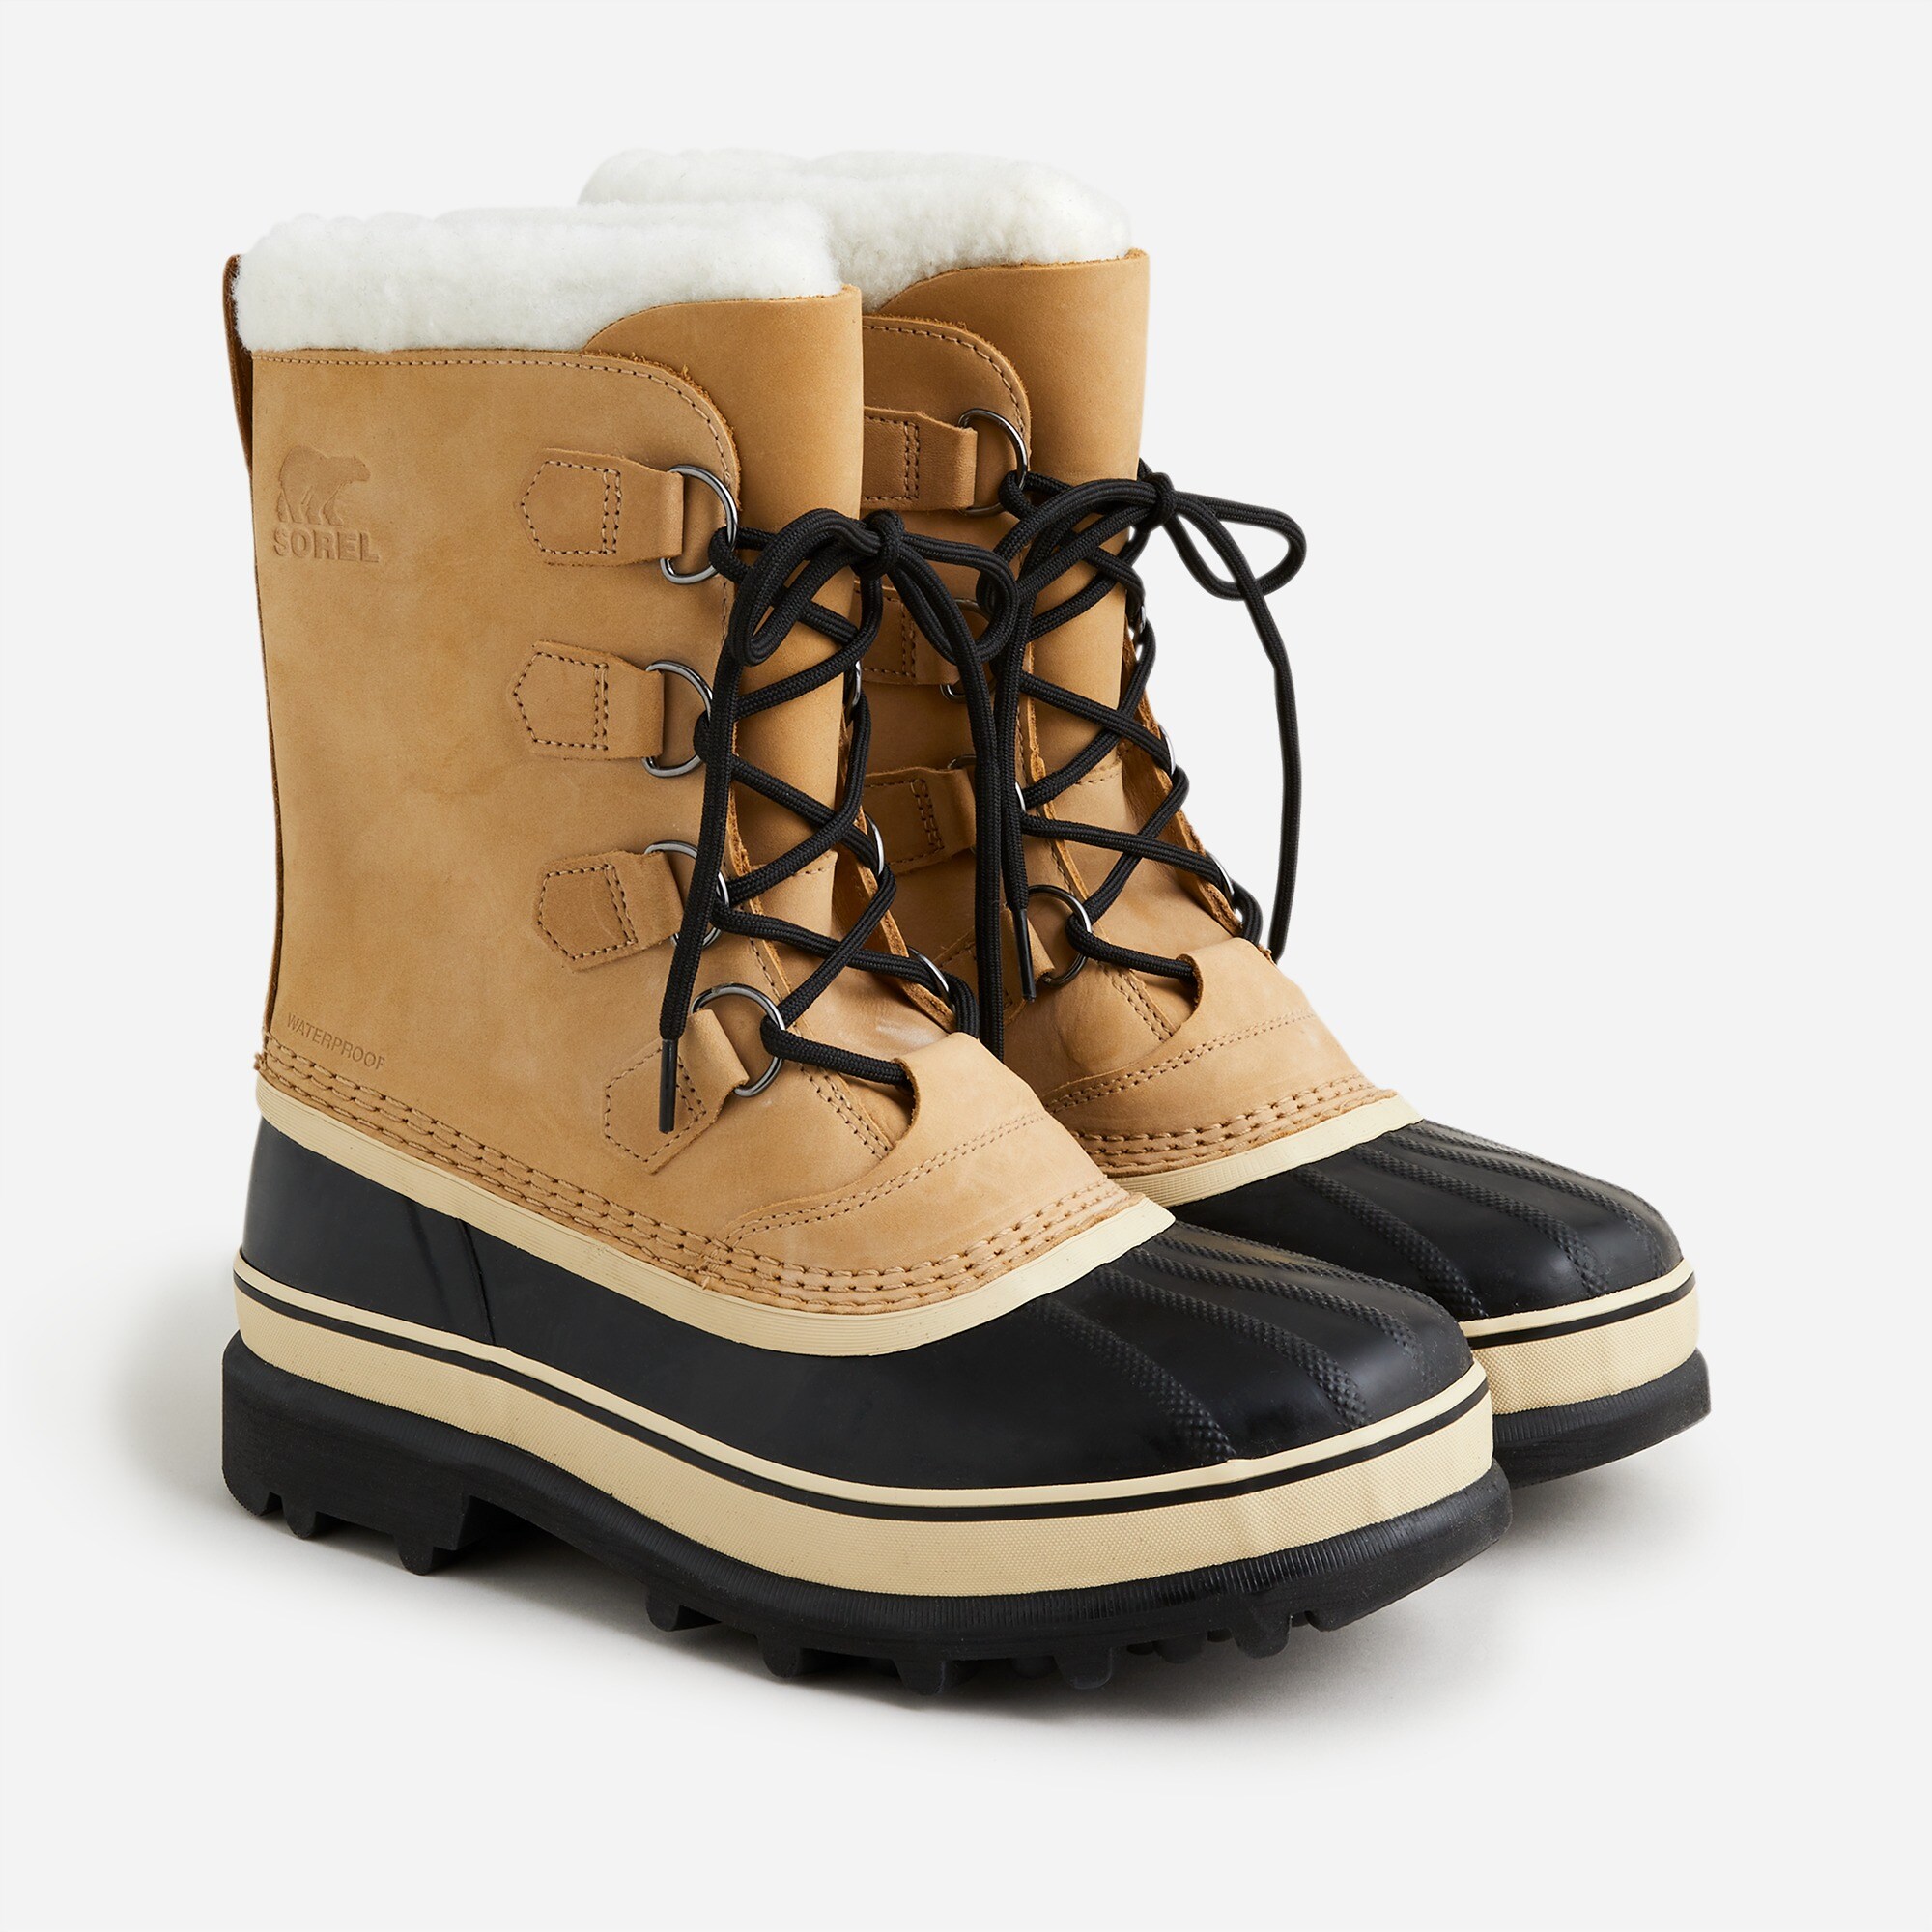  Sorel&reg; Caribou boots